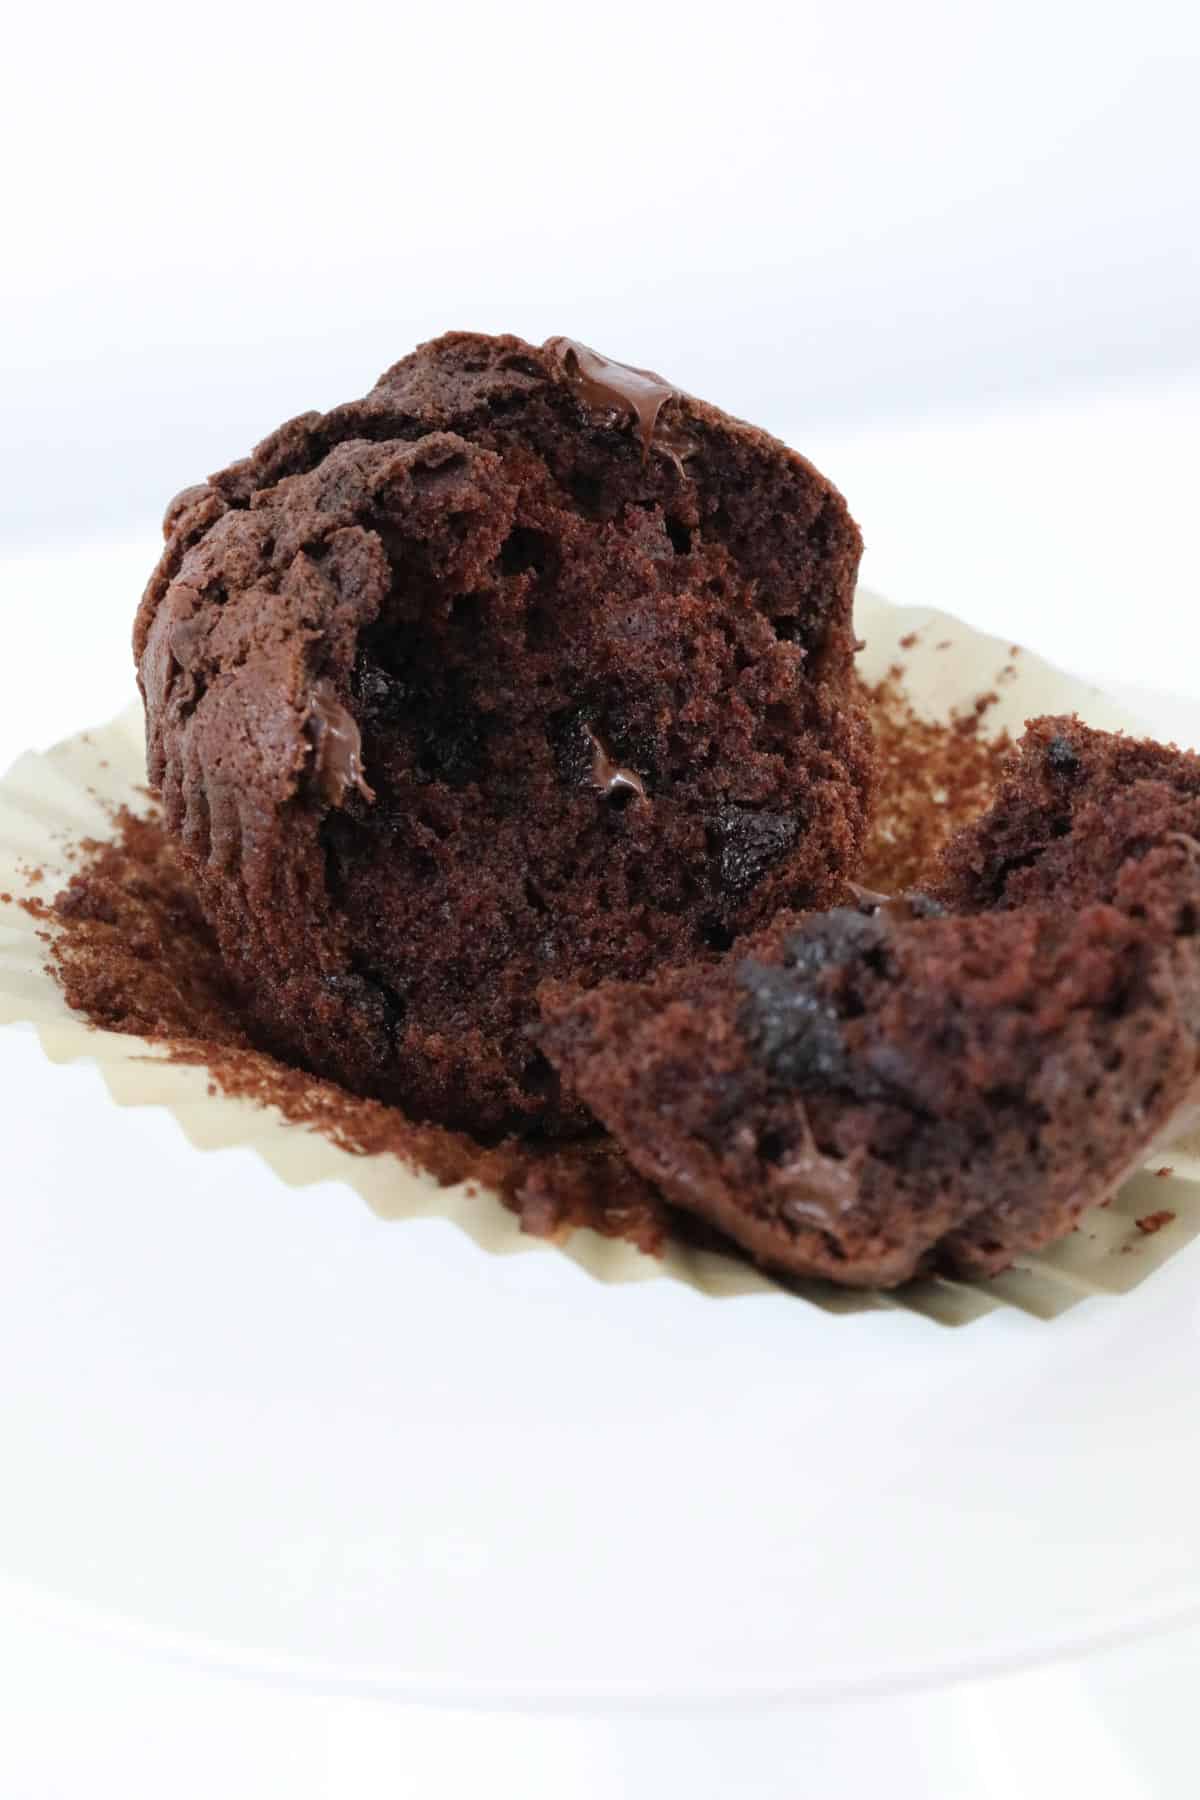 A chocolate muffin broken in half in a muffin paper case